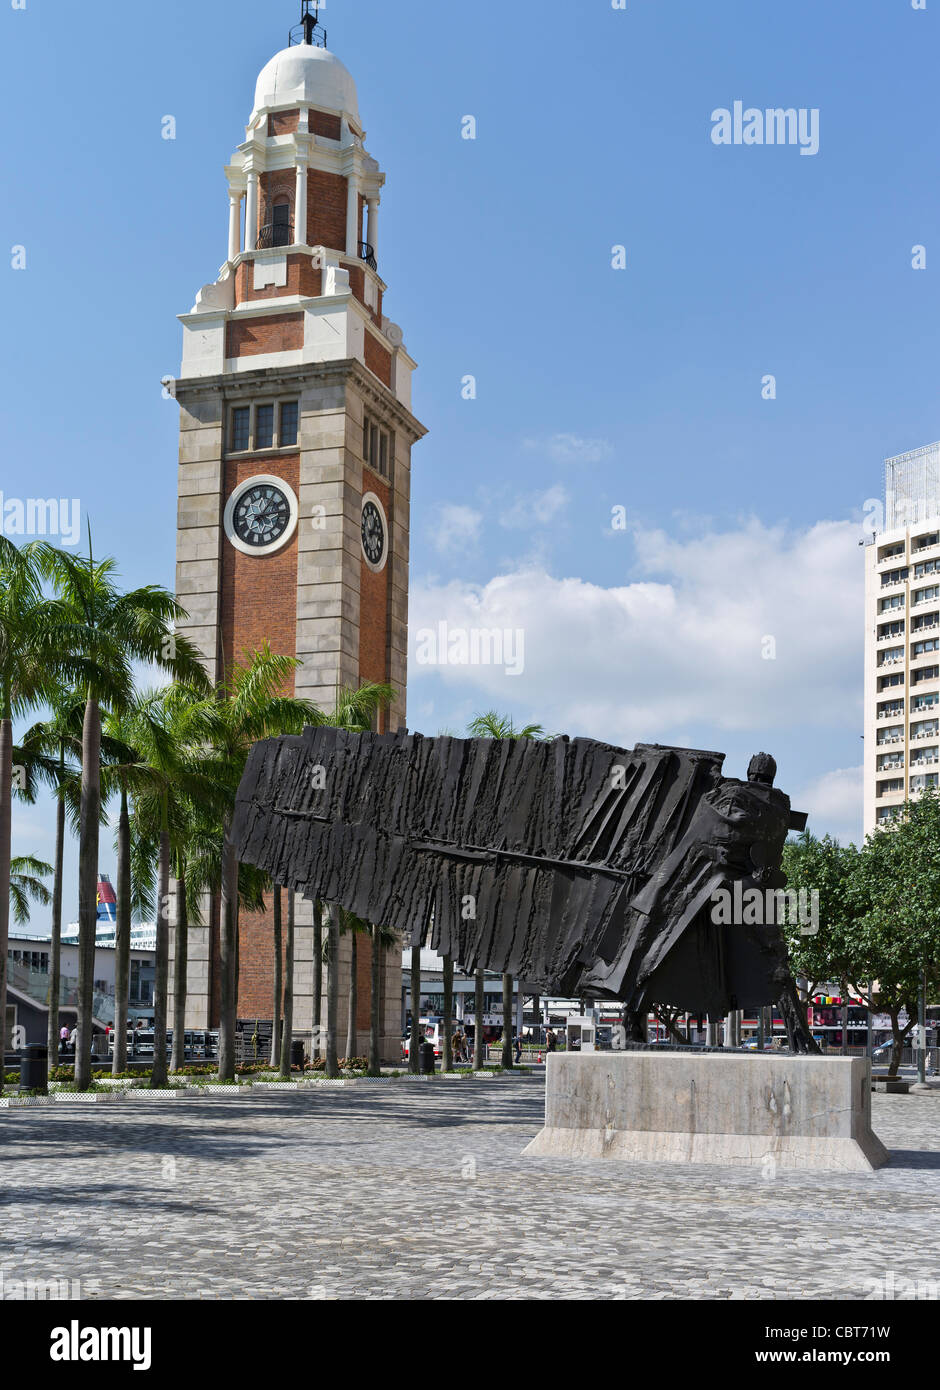 dh der fliegende Franzose TSIM SHA TSUI HONG KONG Skulptur von Cesar und Old Clock Tower kowloon Kunst im Freien neuen modernen Uhrturm Stockfoto